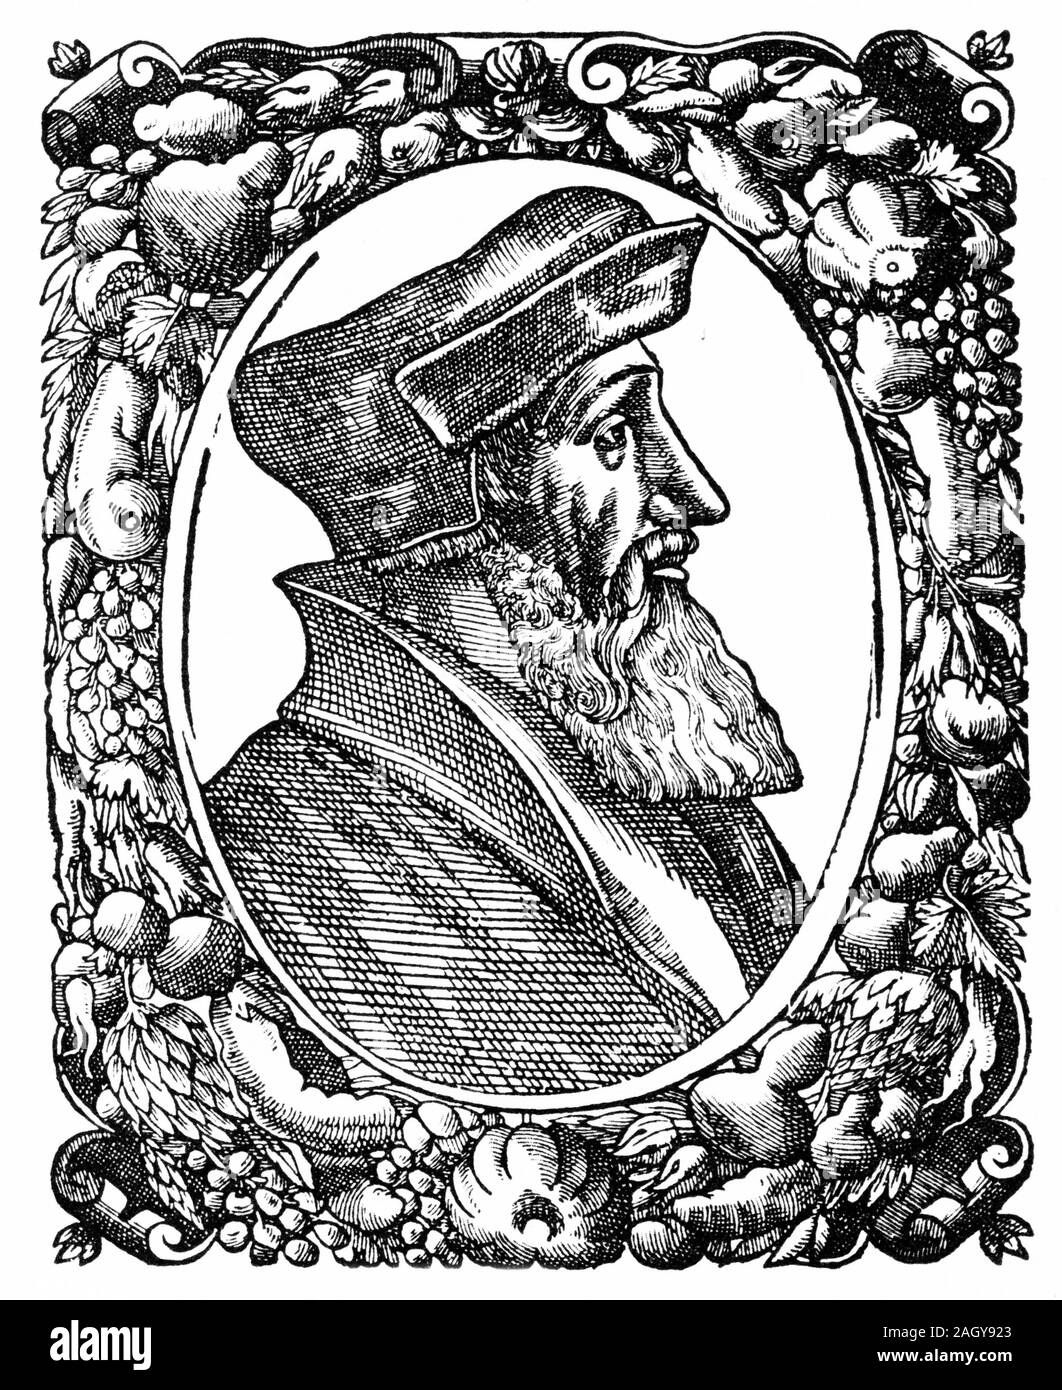 Incisione di Johannes Oecolampadius (aka Oekolampadius, Oekolampad; 1482 - 1531) Tedesco riformatore protestante. Egli è stato il leader della fazione protestante in Baden Disputa del 1526, e fu uno dei fondatori della teologia protestante. Foto Stock